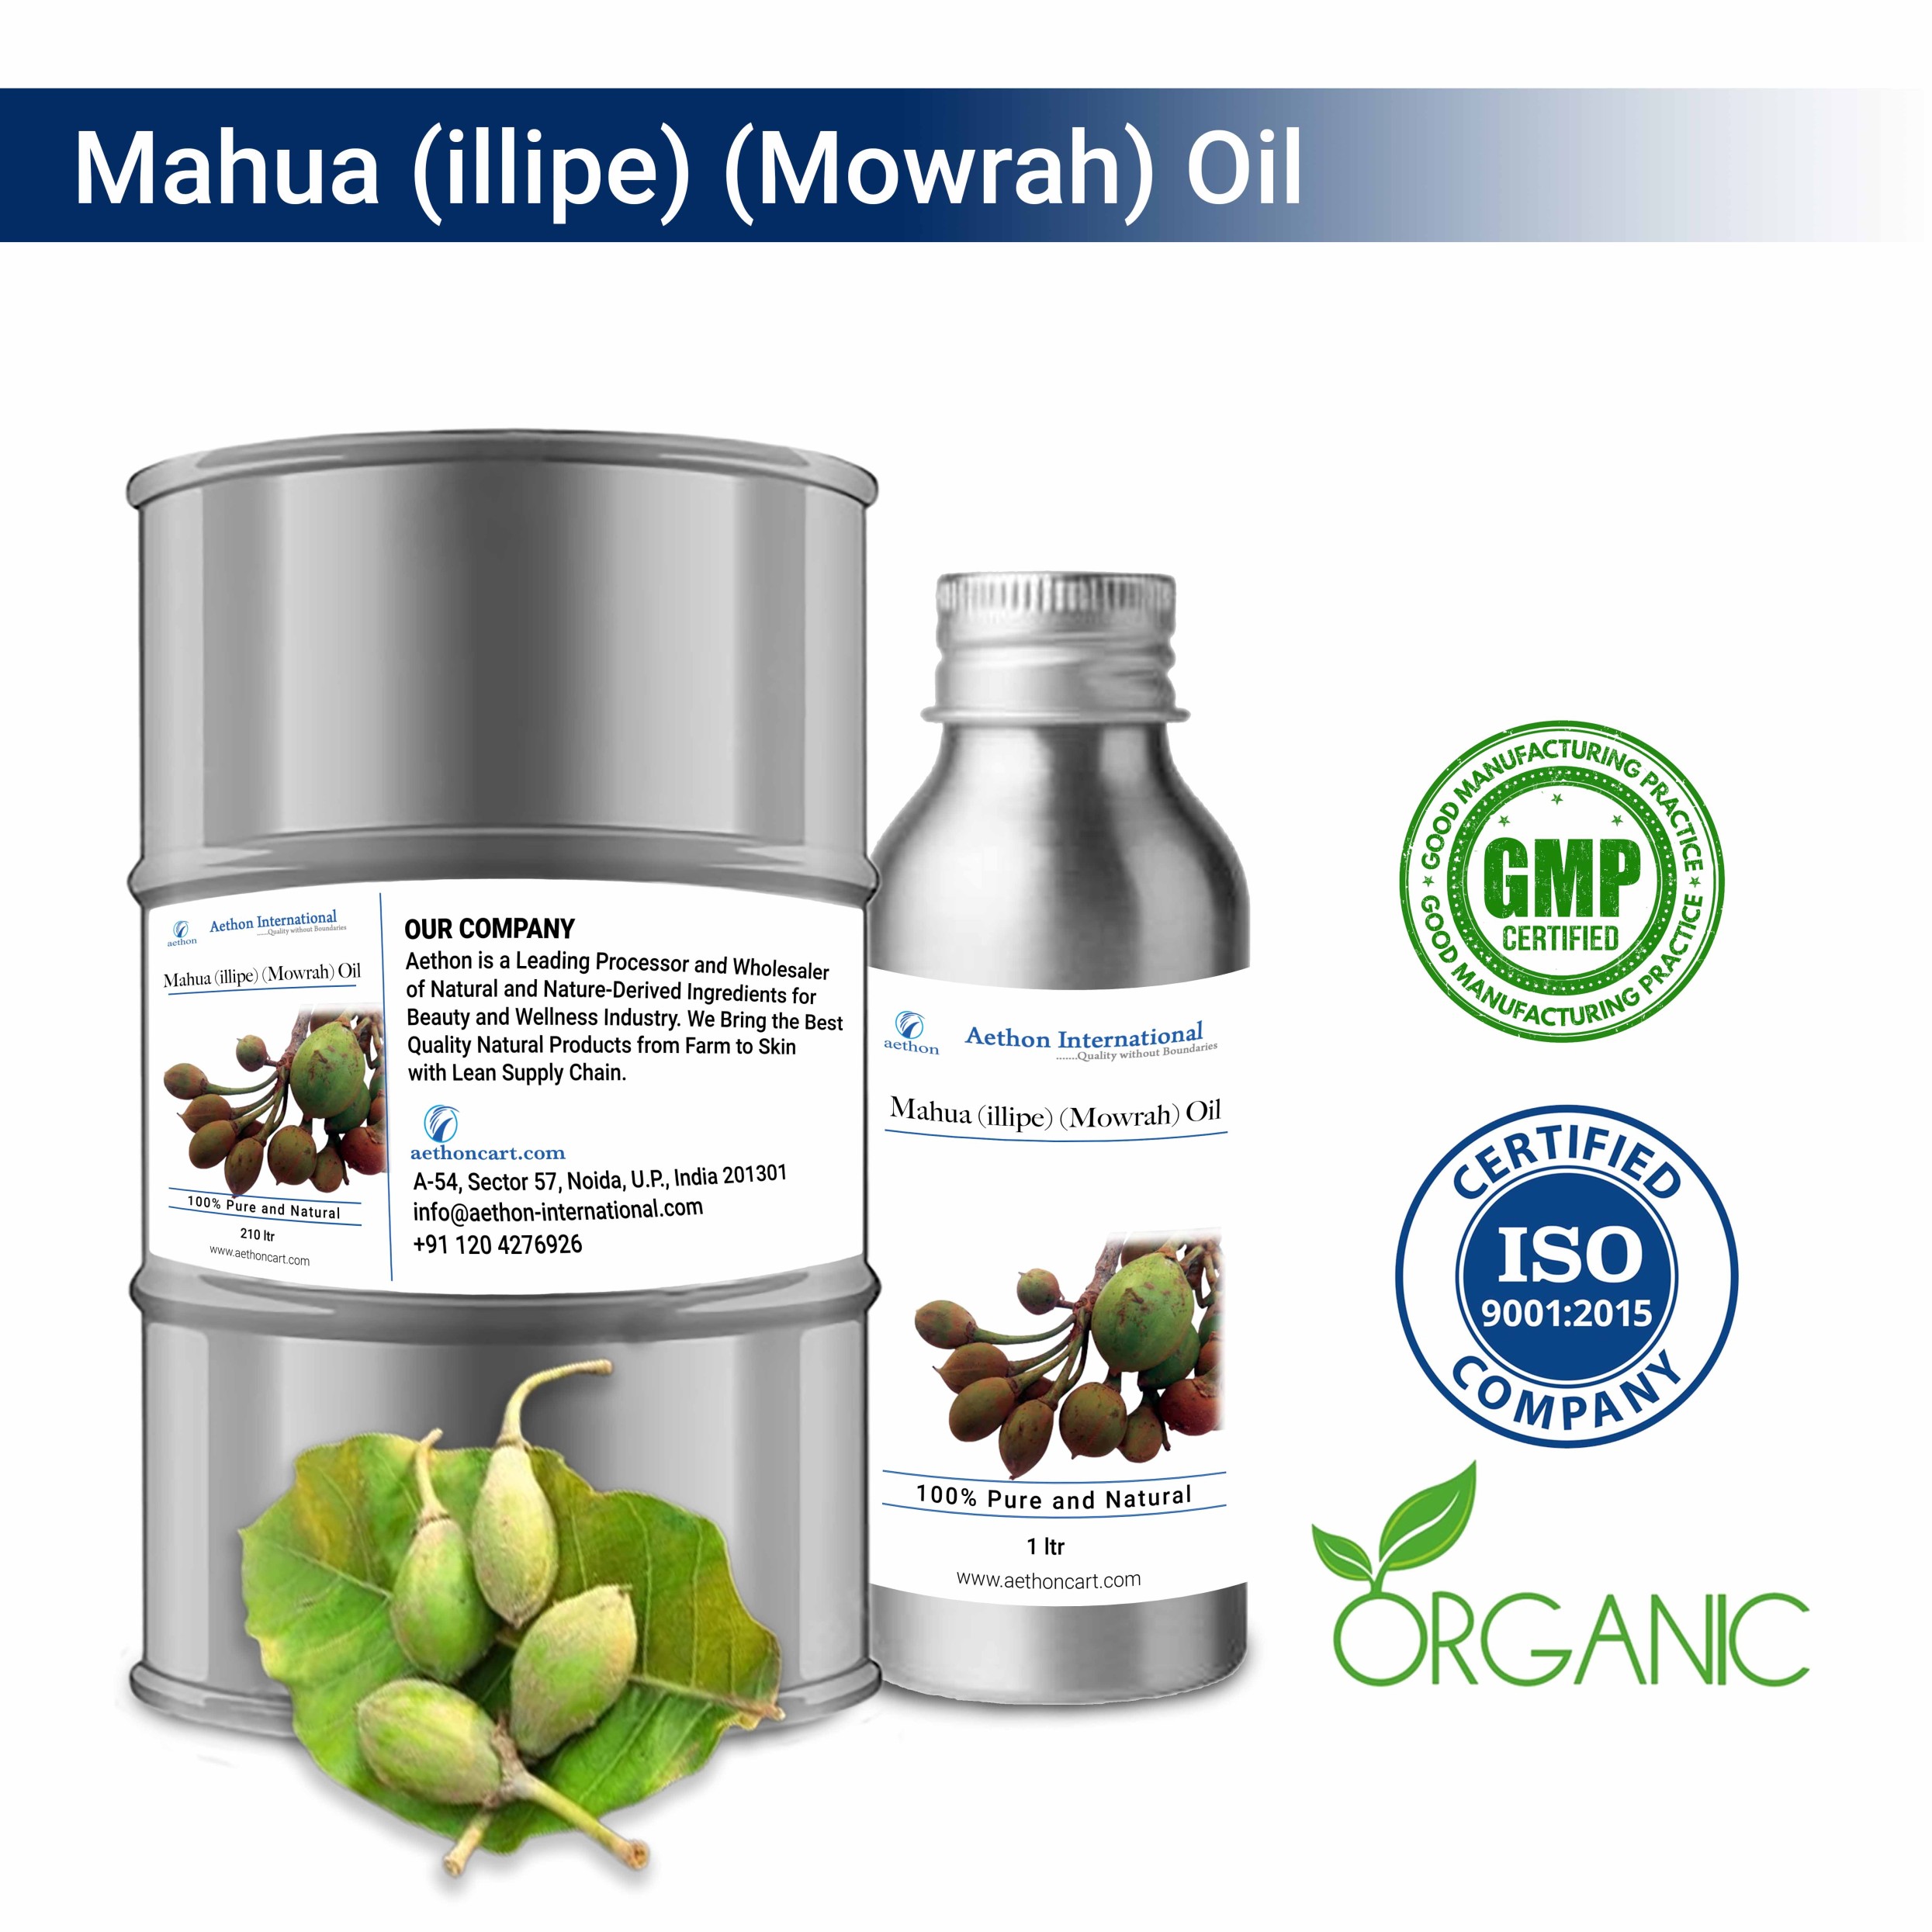 Mahua (Illipe) (Mowrah) Oil